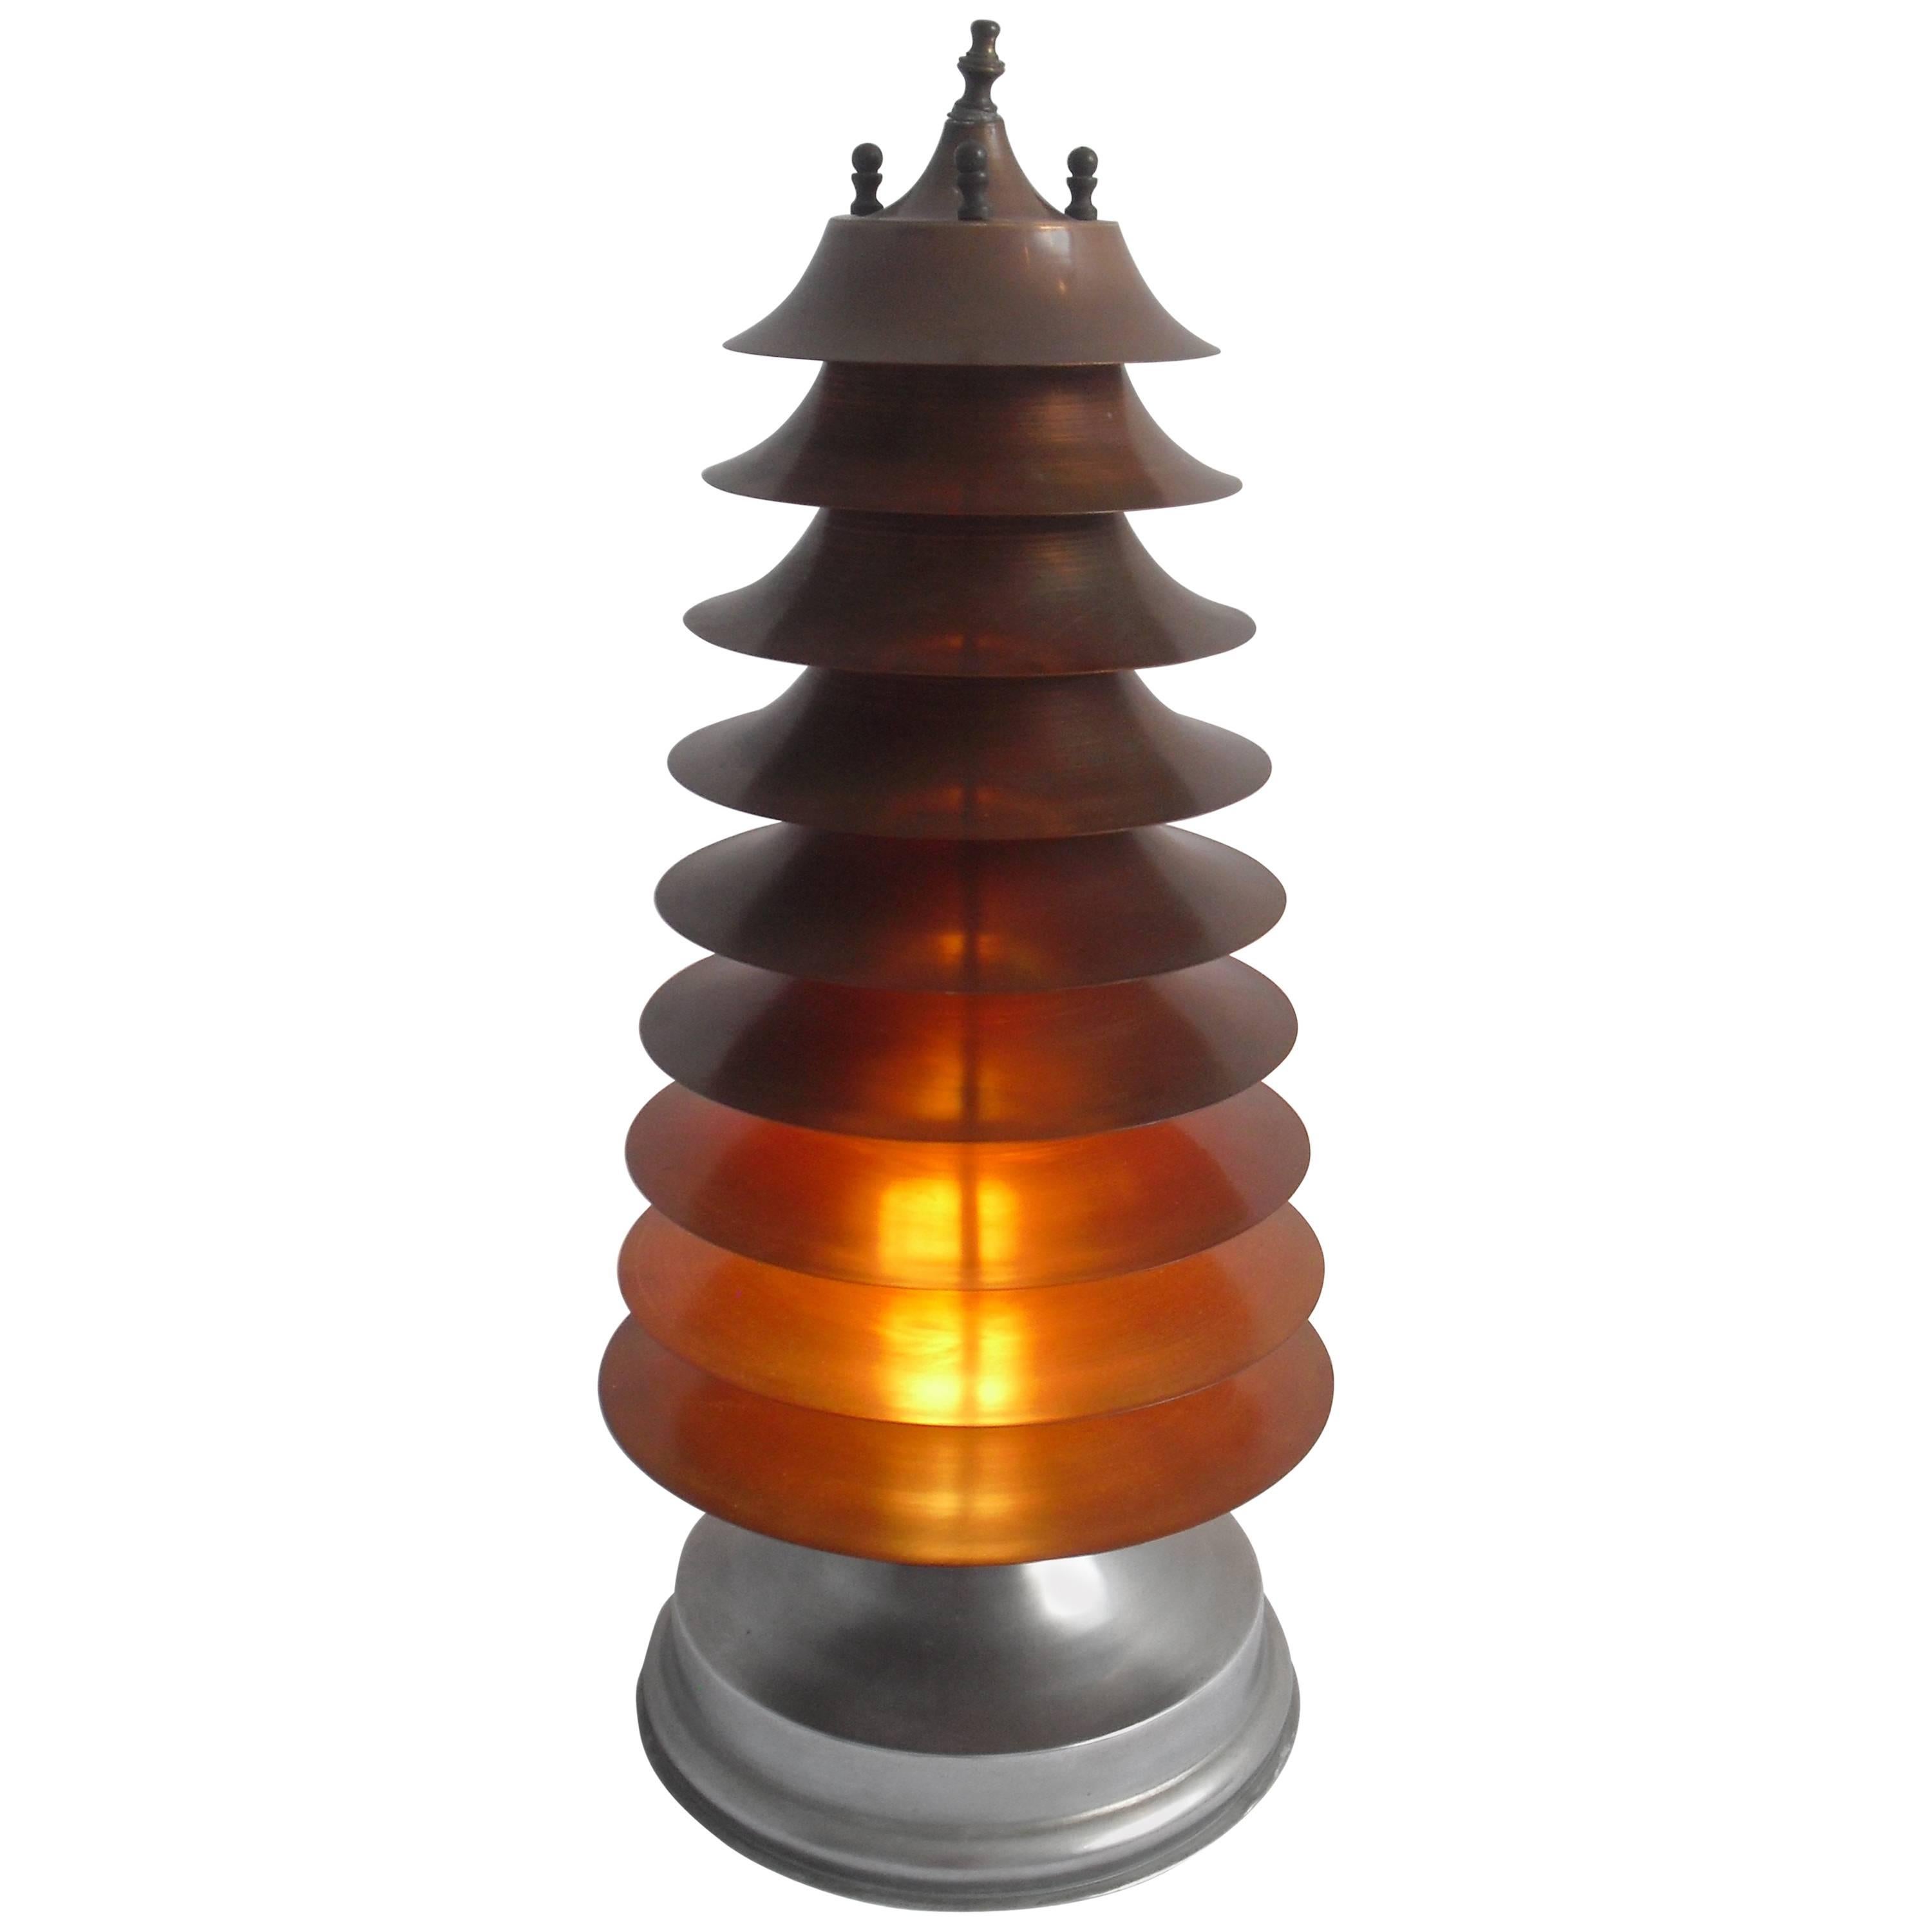 Rare Art-Deco Machine Age Nine-Tier Copper Pagoda Table Lamp